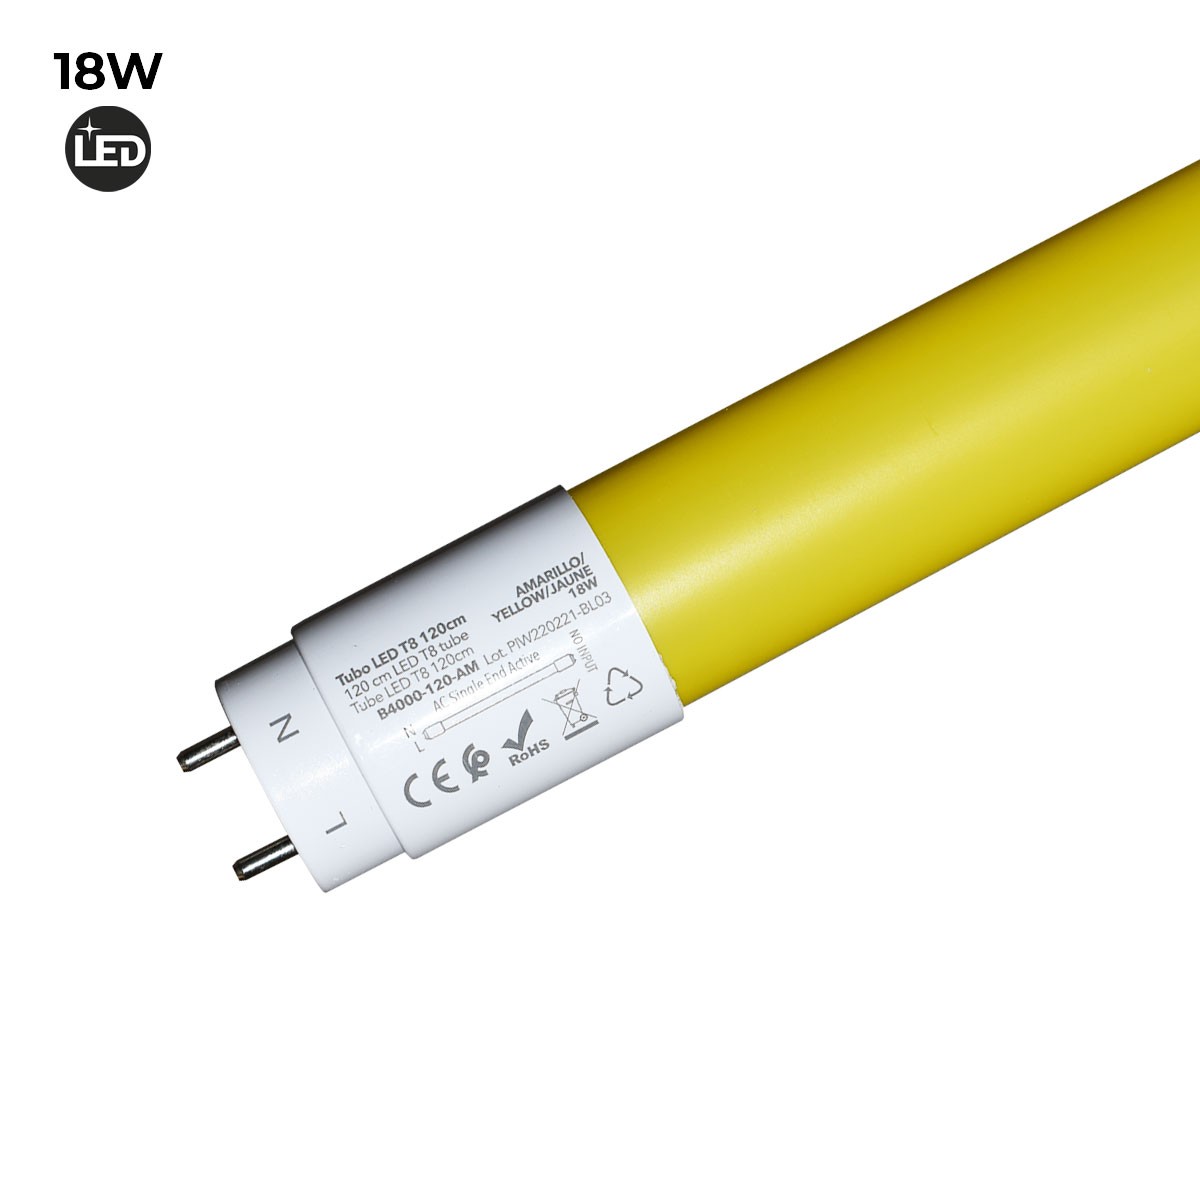 2er Pack LED Röhre T8 18 Watt 320 Grad 1,20 m gelb 2er Pack